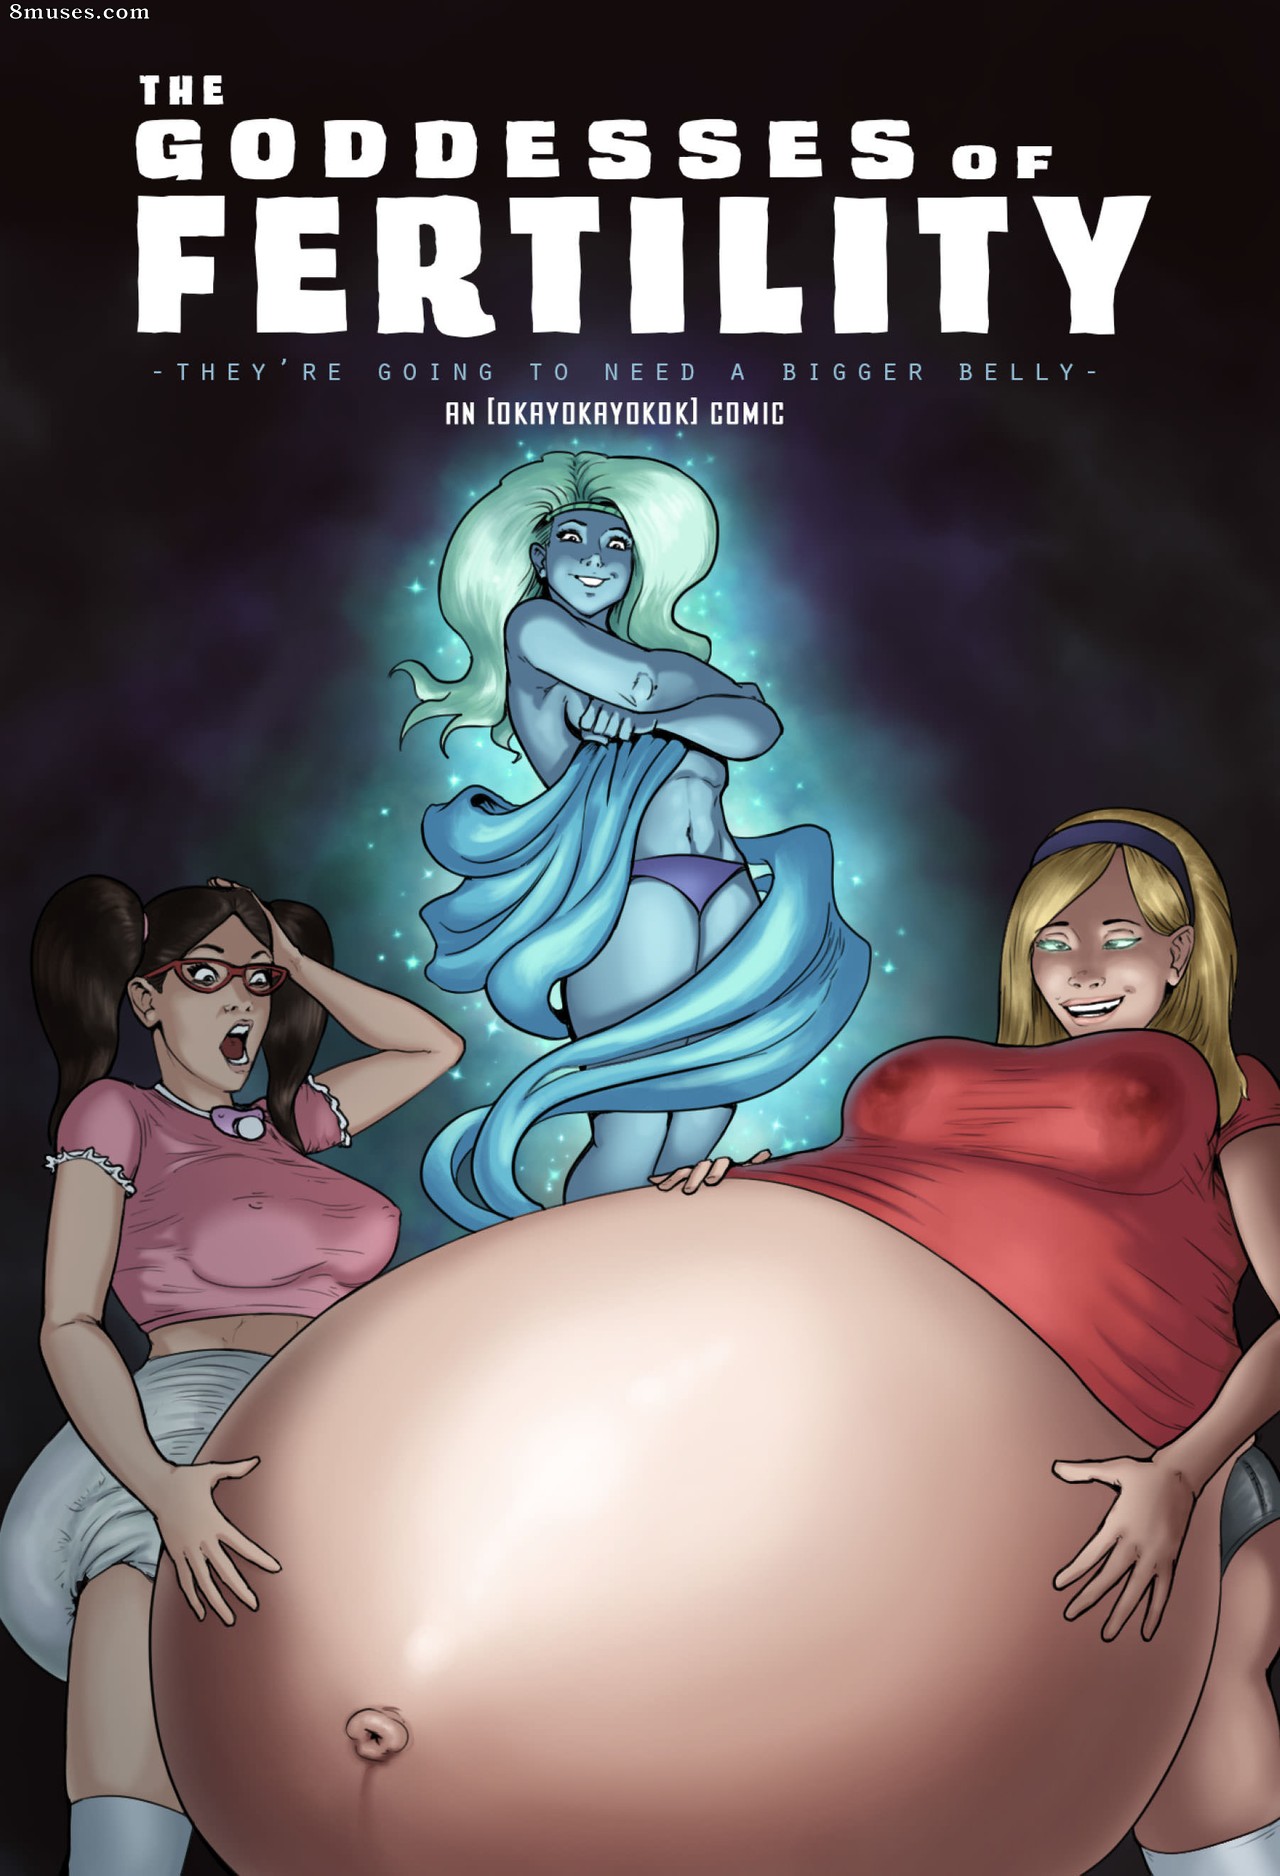 Fertility tree porn comic